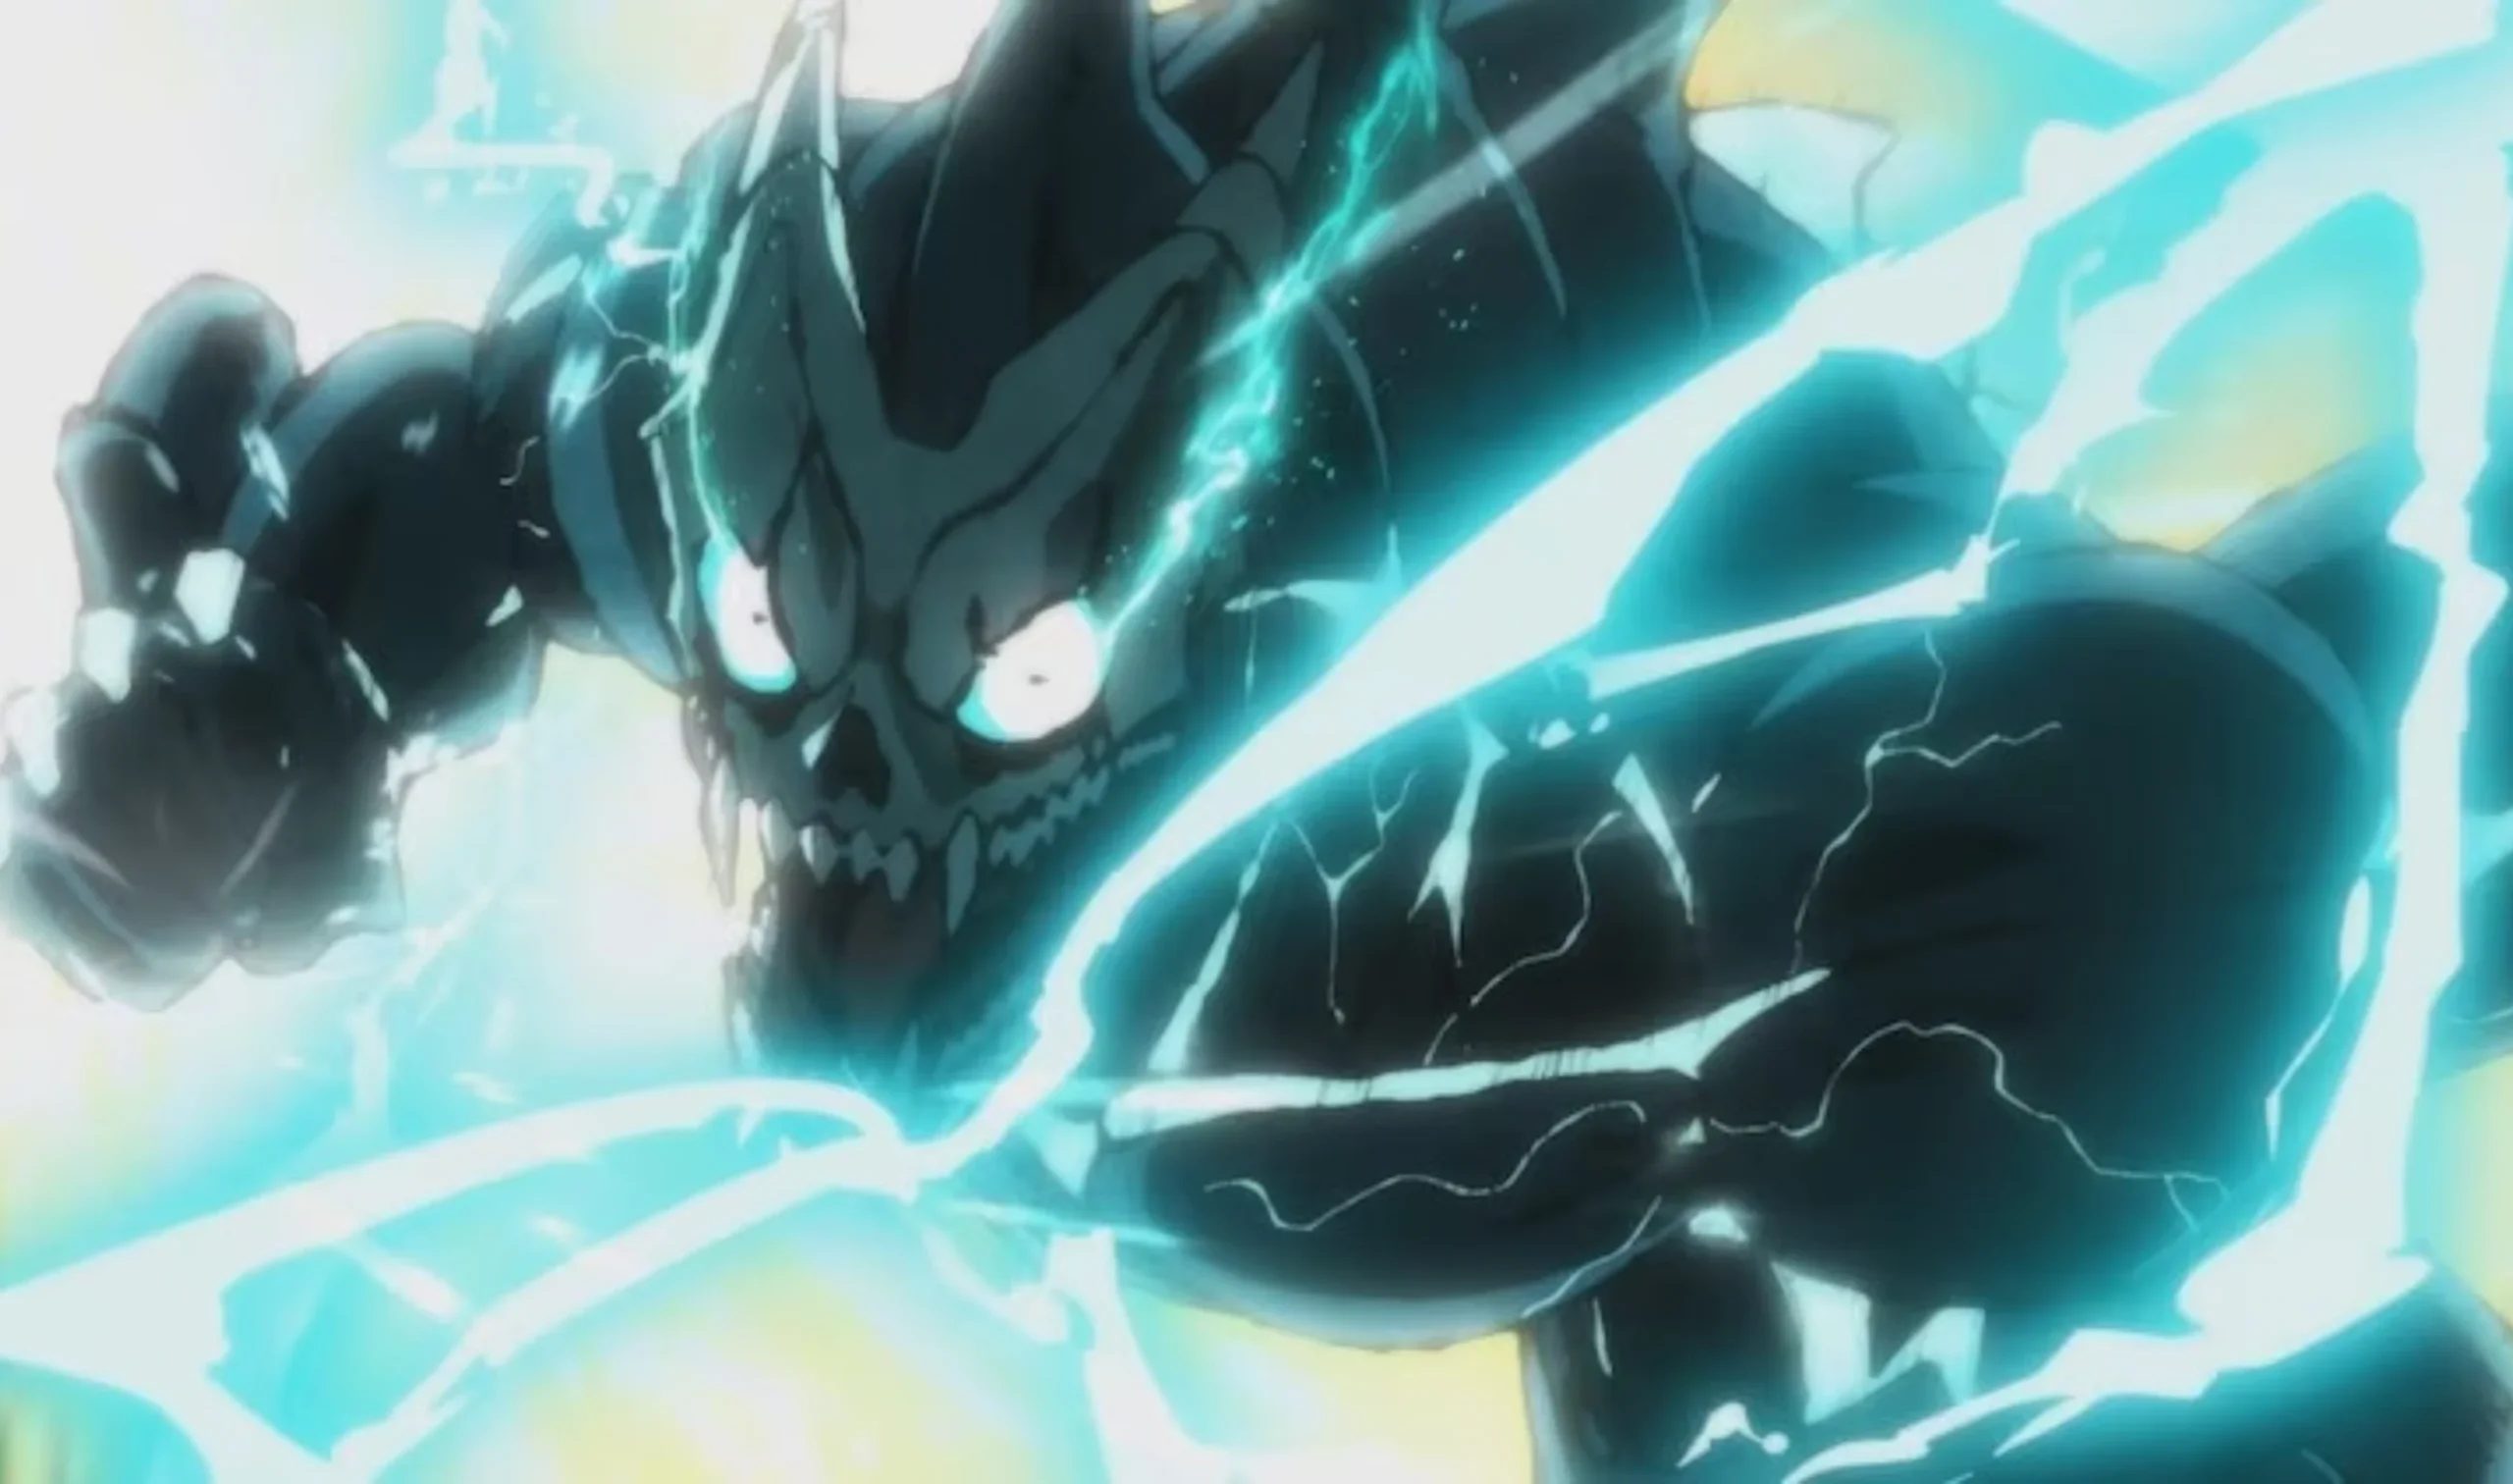 Kaiju No. 8 Episode 1 Breakdown: It’s feel like Attack On Titan